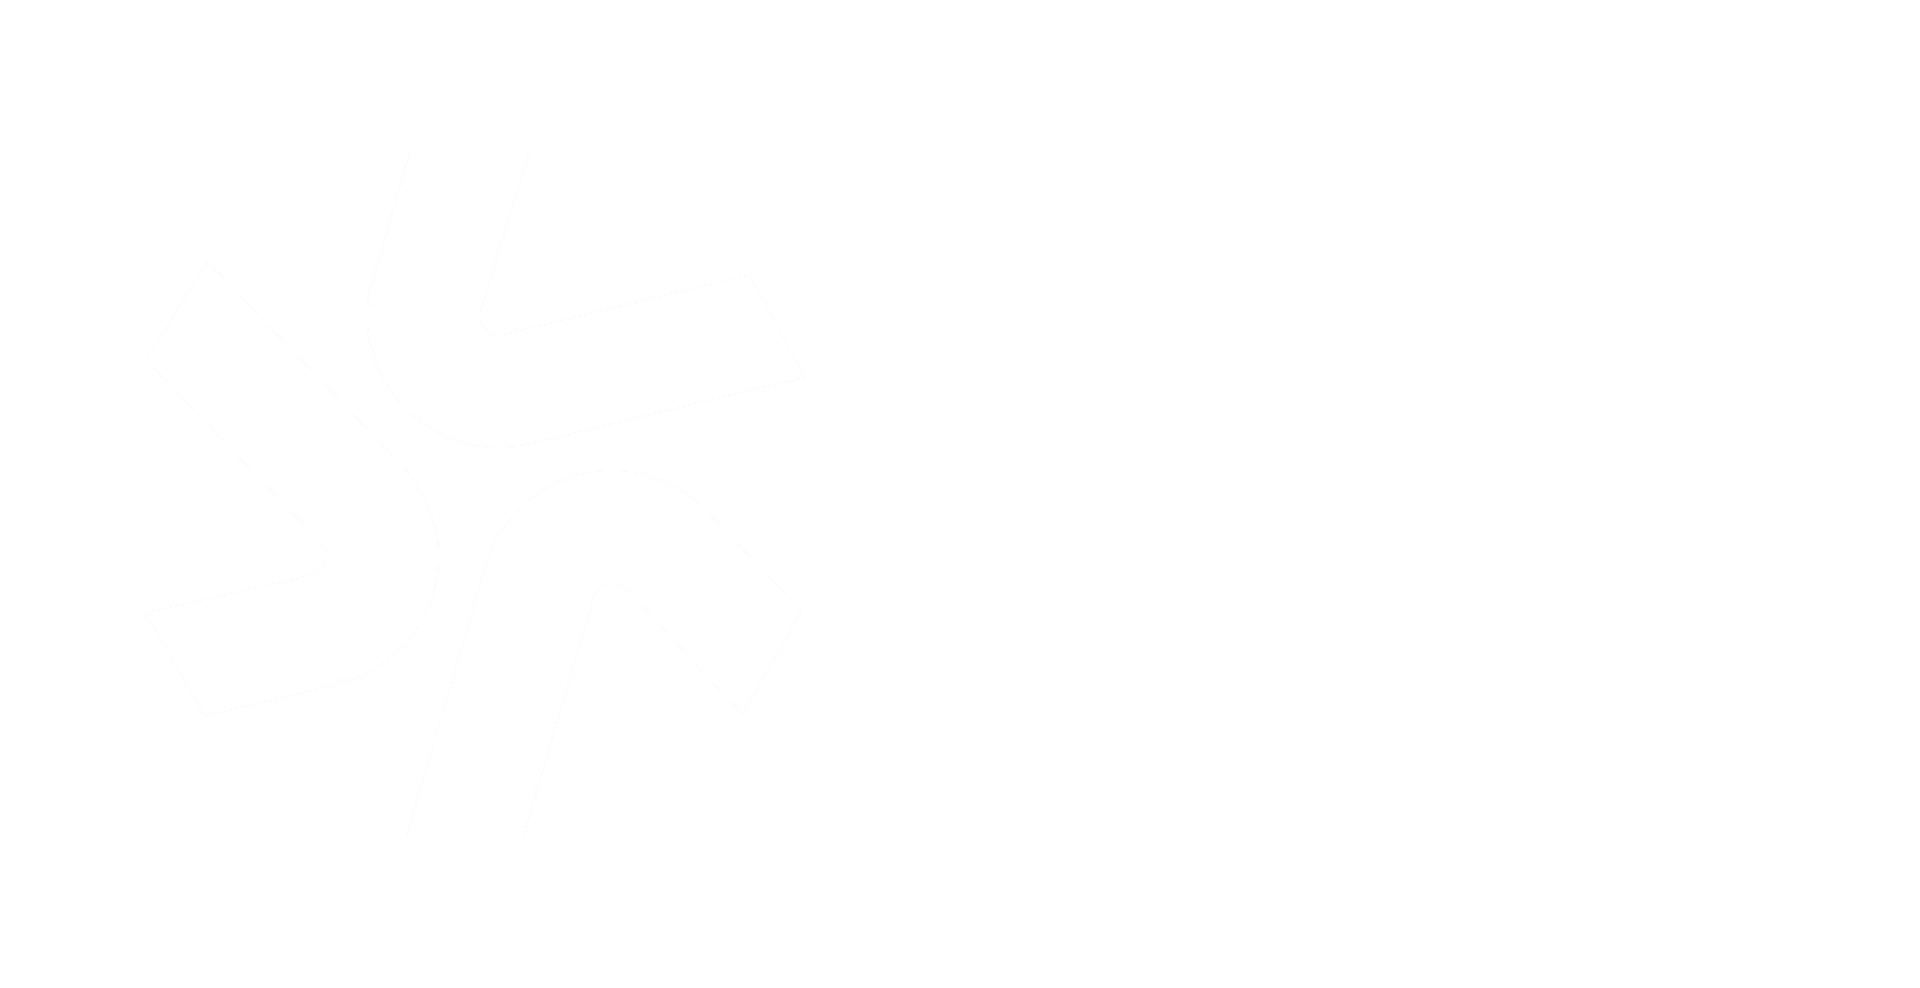 Deputy & Tabology logos